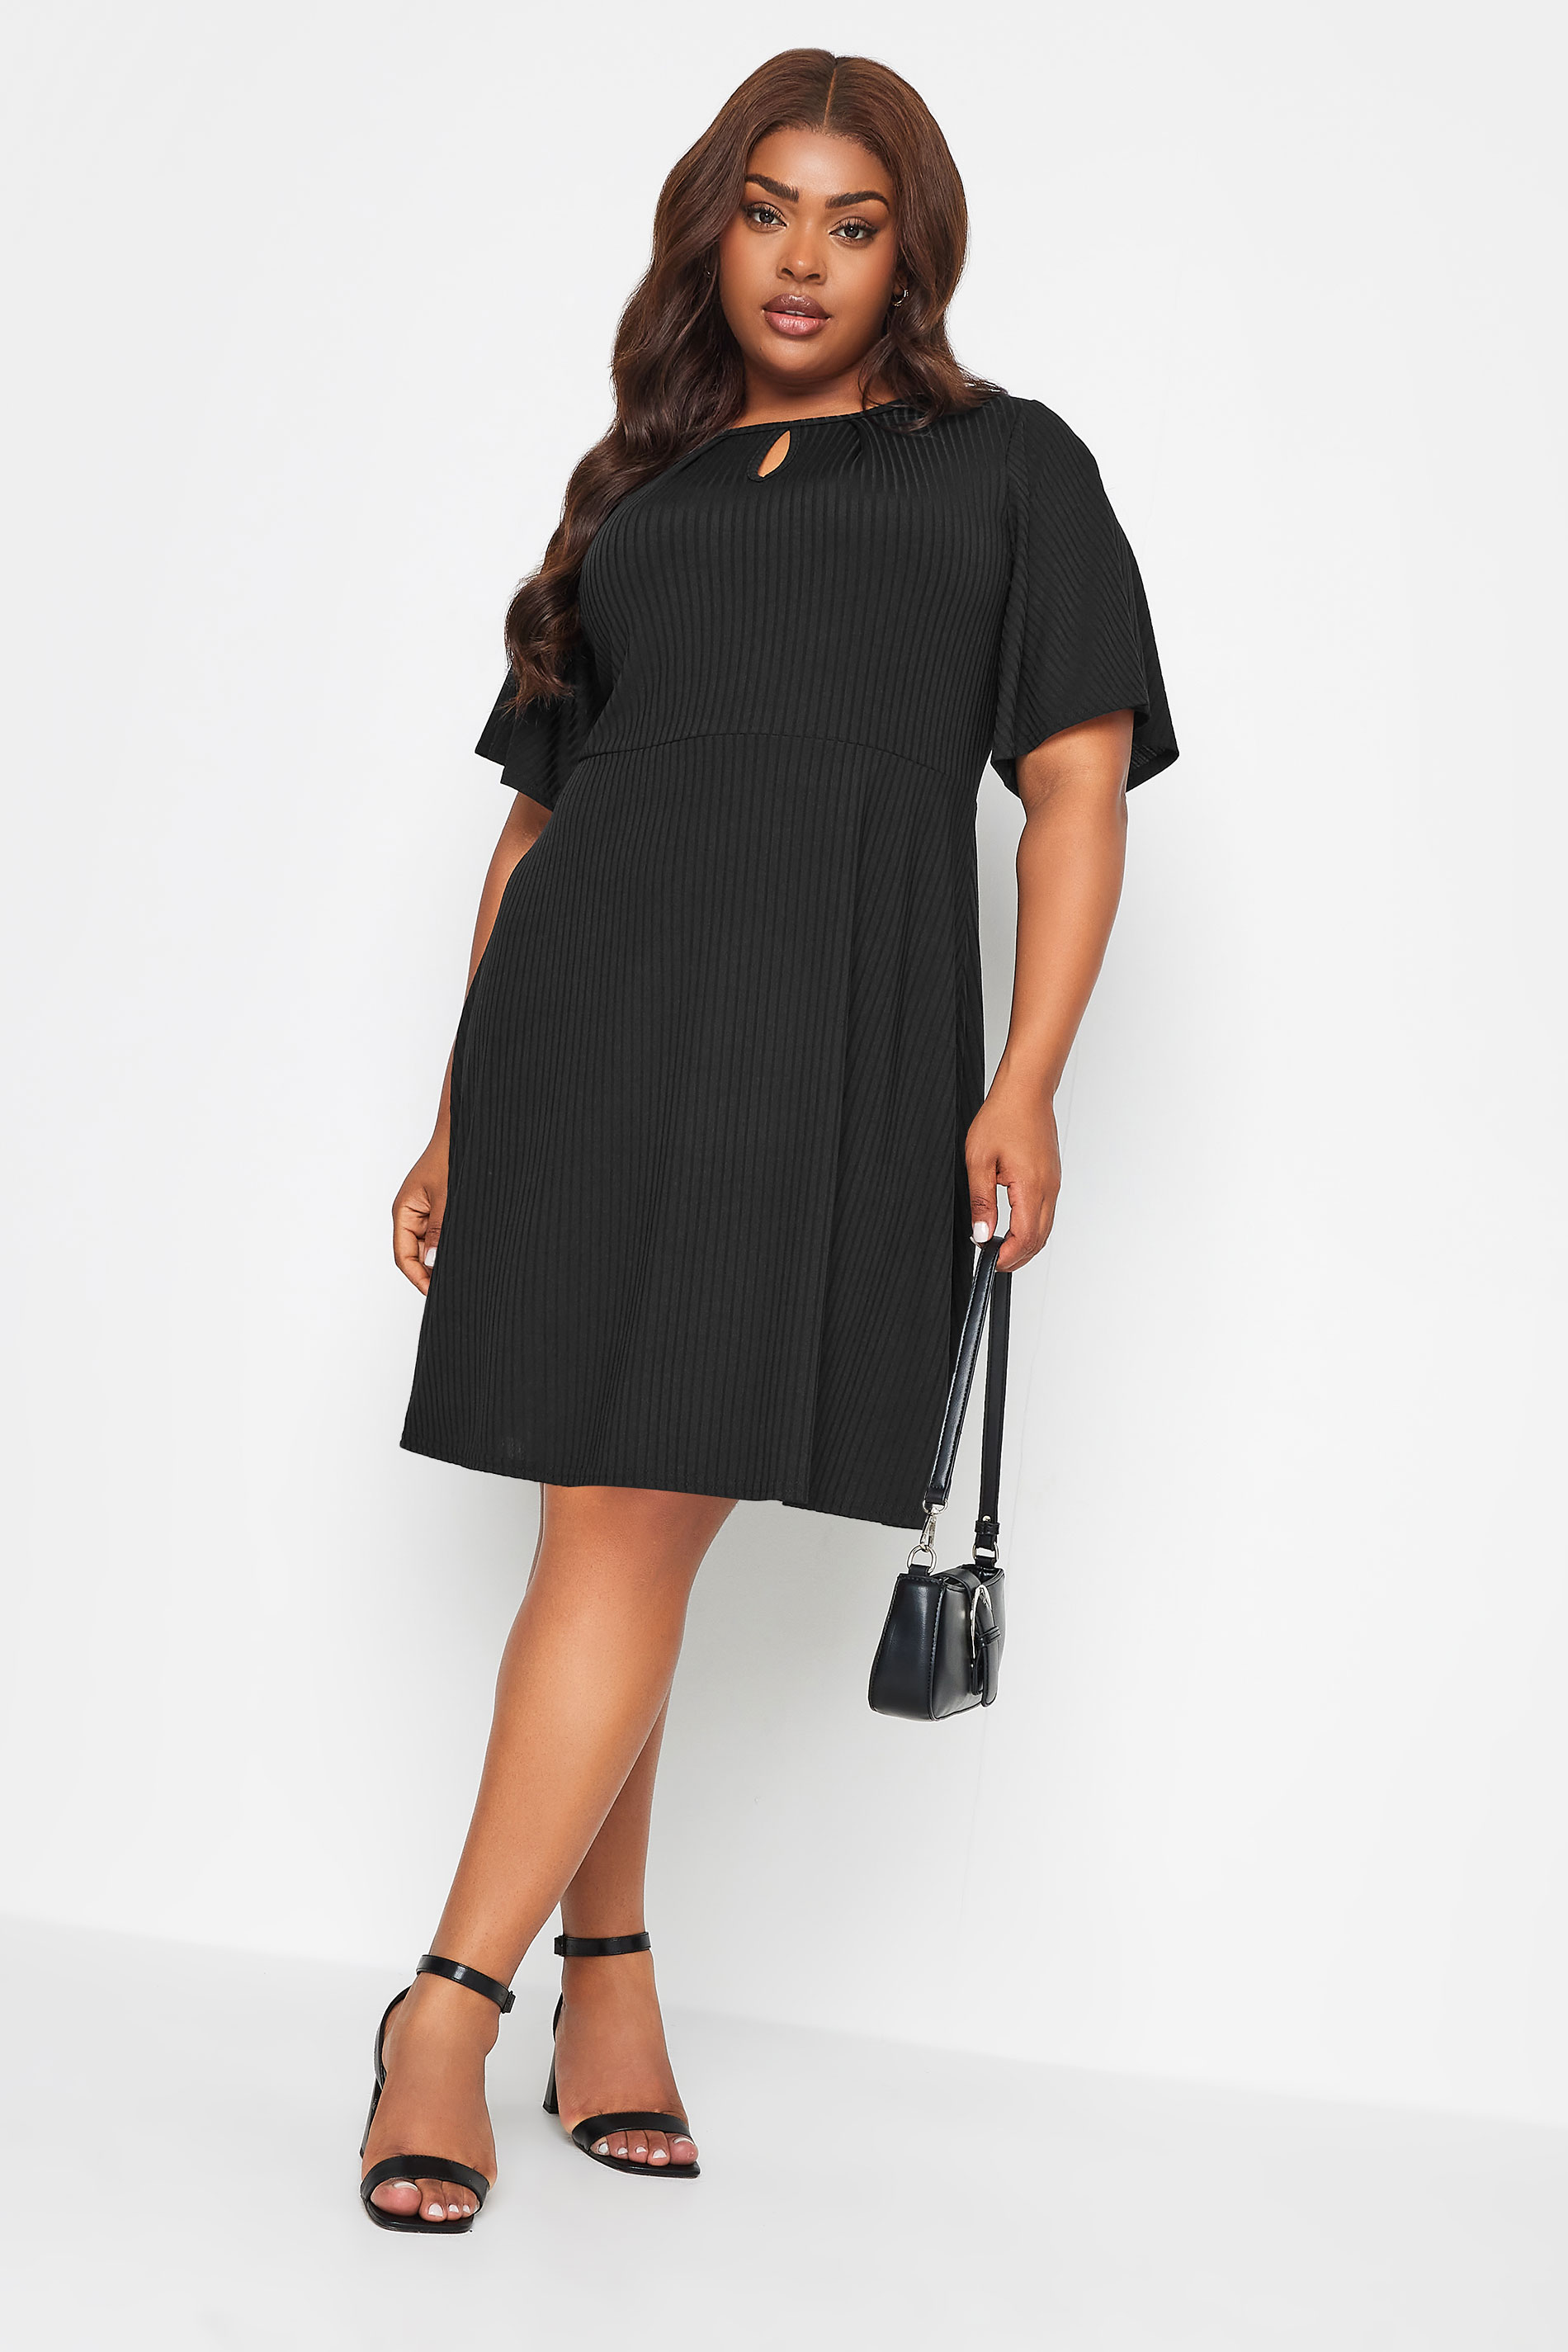 YOURS Plus Size Black Keyhole Mini Dress | Yours Clothing